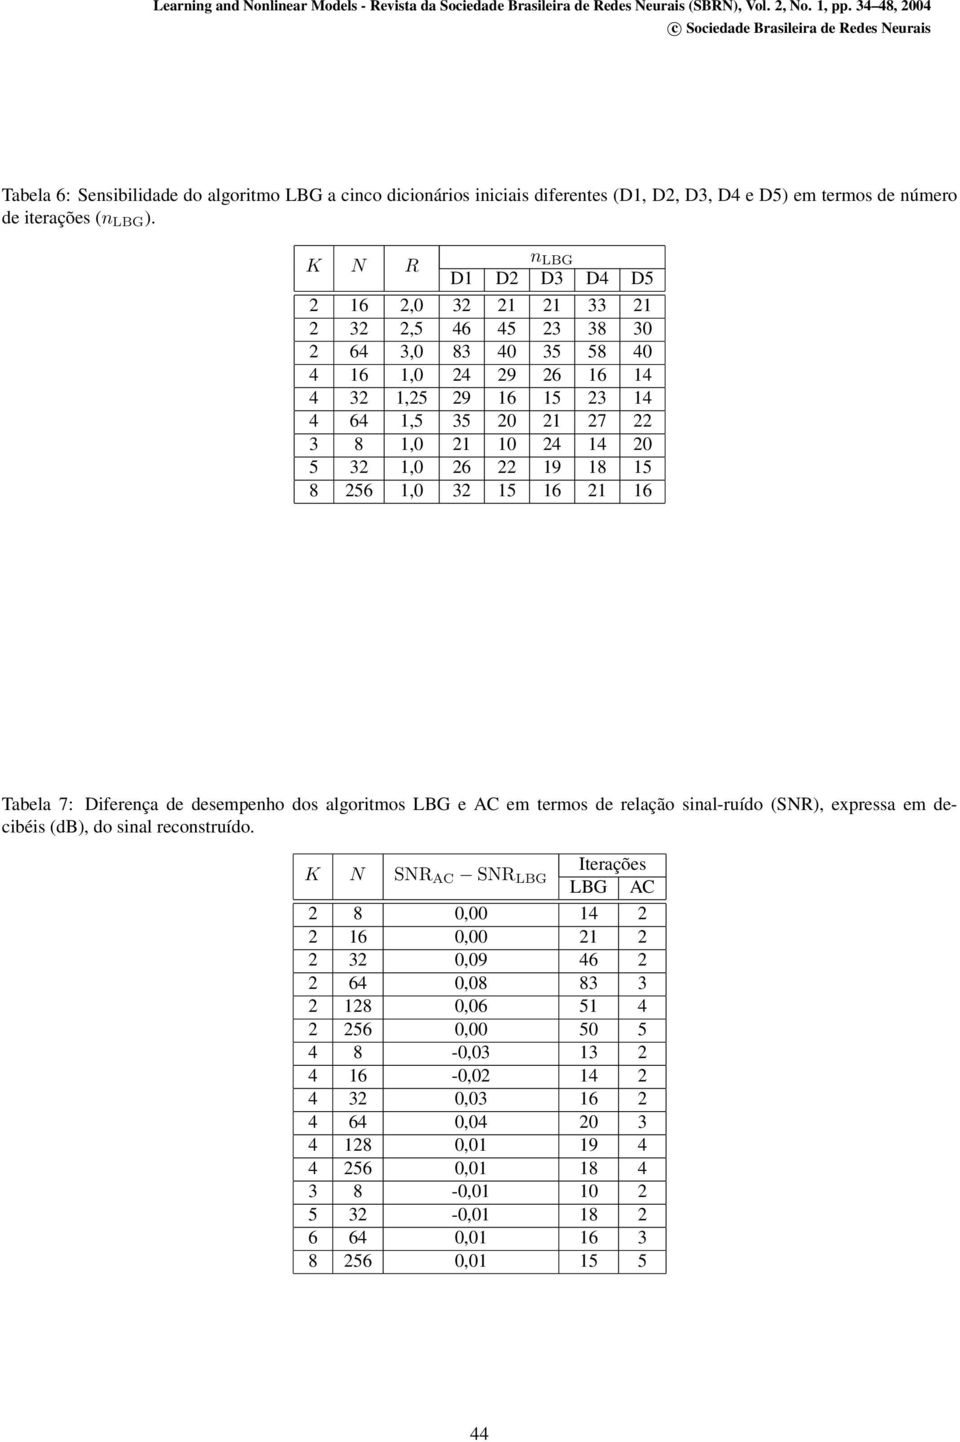 56 1,0 3 15 16 1 16 Tabela 7: Diferença de desempenho dos algoritmos LBG e AC em termos de relação sinal-ruído (SNR), expressa em decibéis (db), do sinal reconstruído.